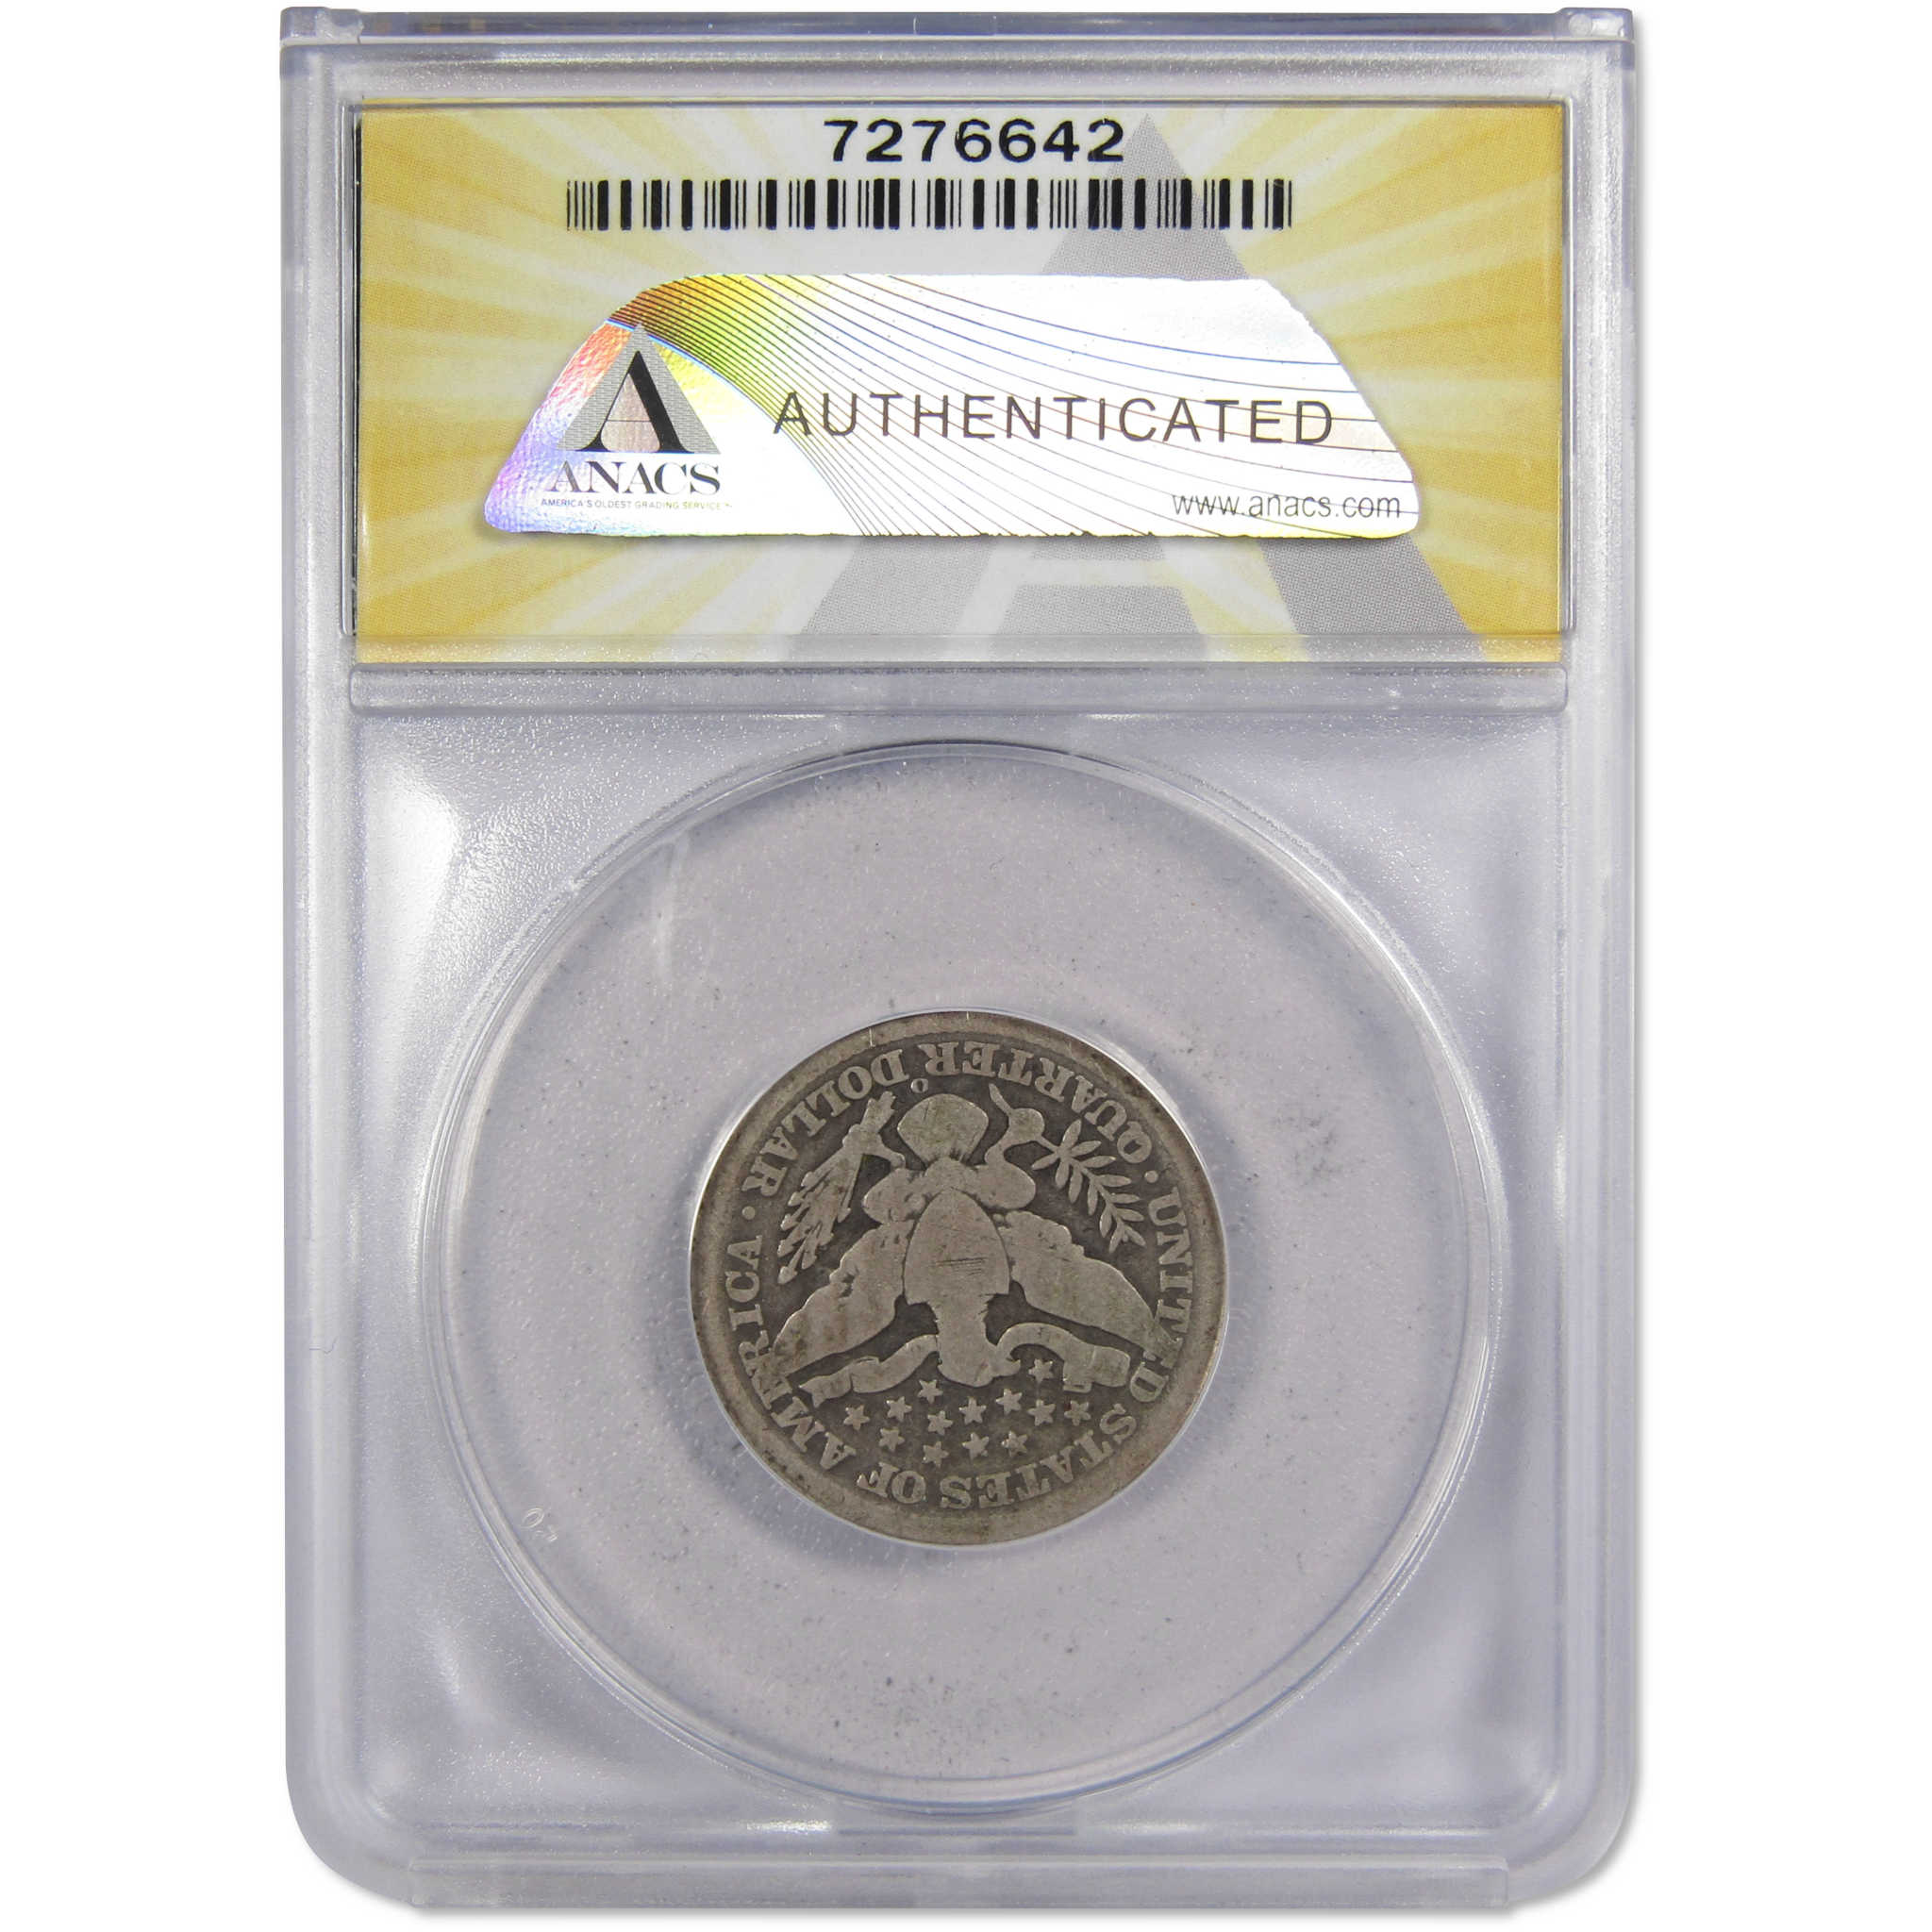 1896 O Barber Quarter G 4 ANACS 90% Silver 25c Type Coin SKU:IPC7504